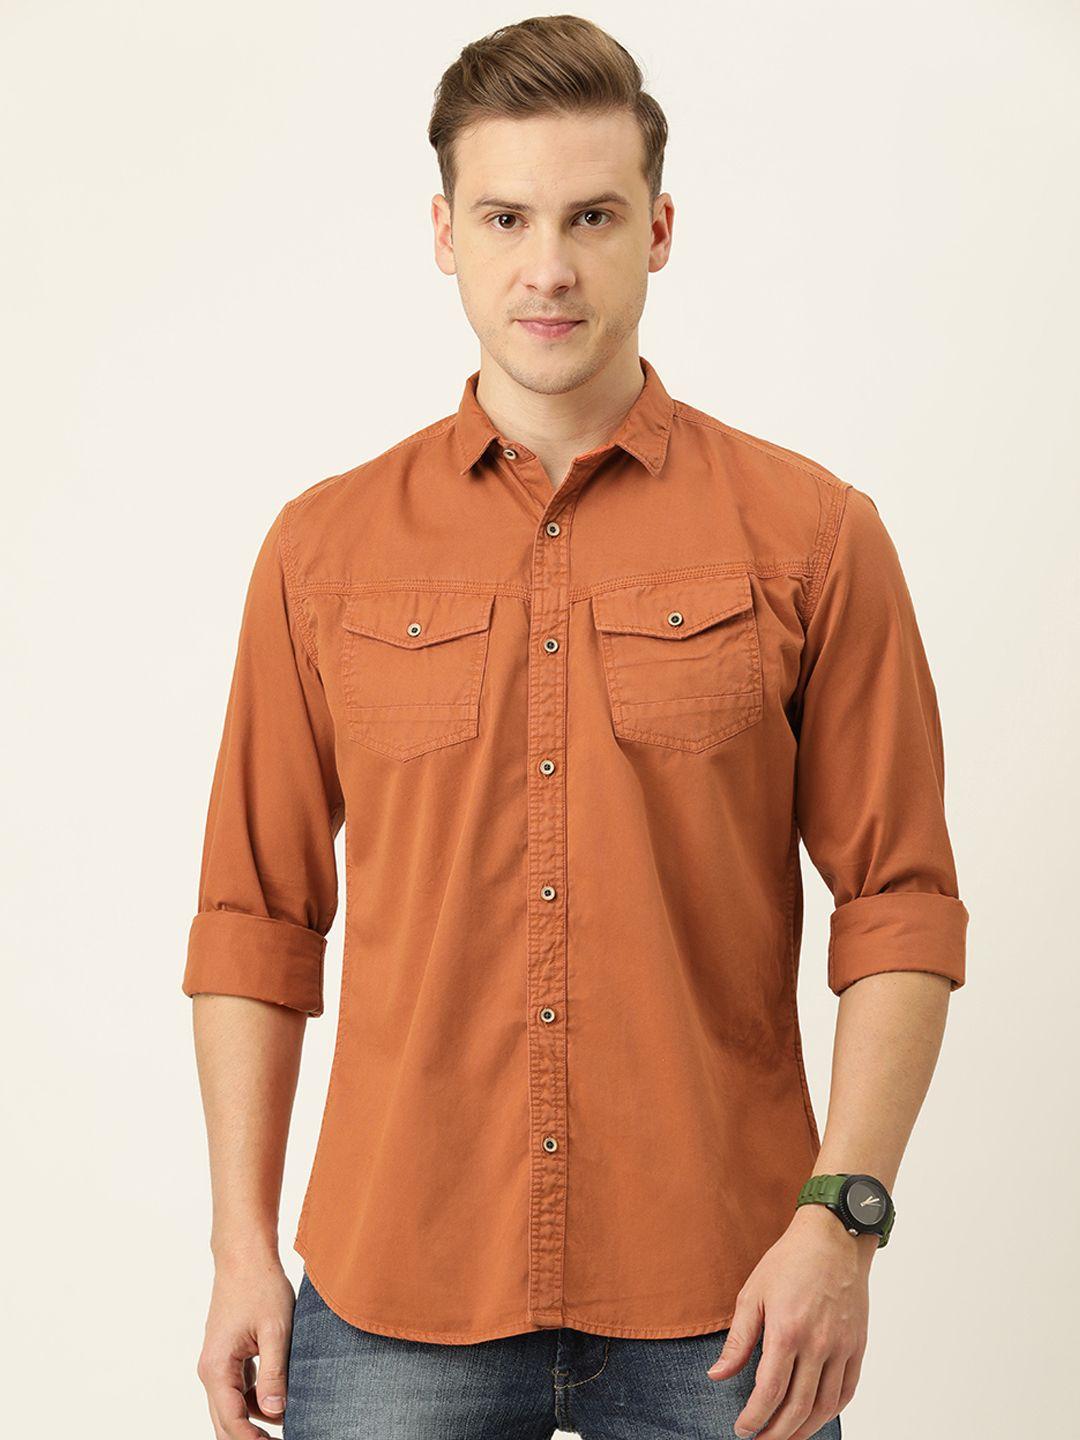 ivoc-men-rust-orange-slim-fit-casual-shirt